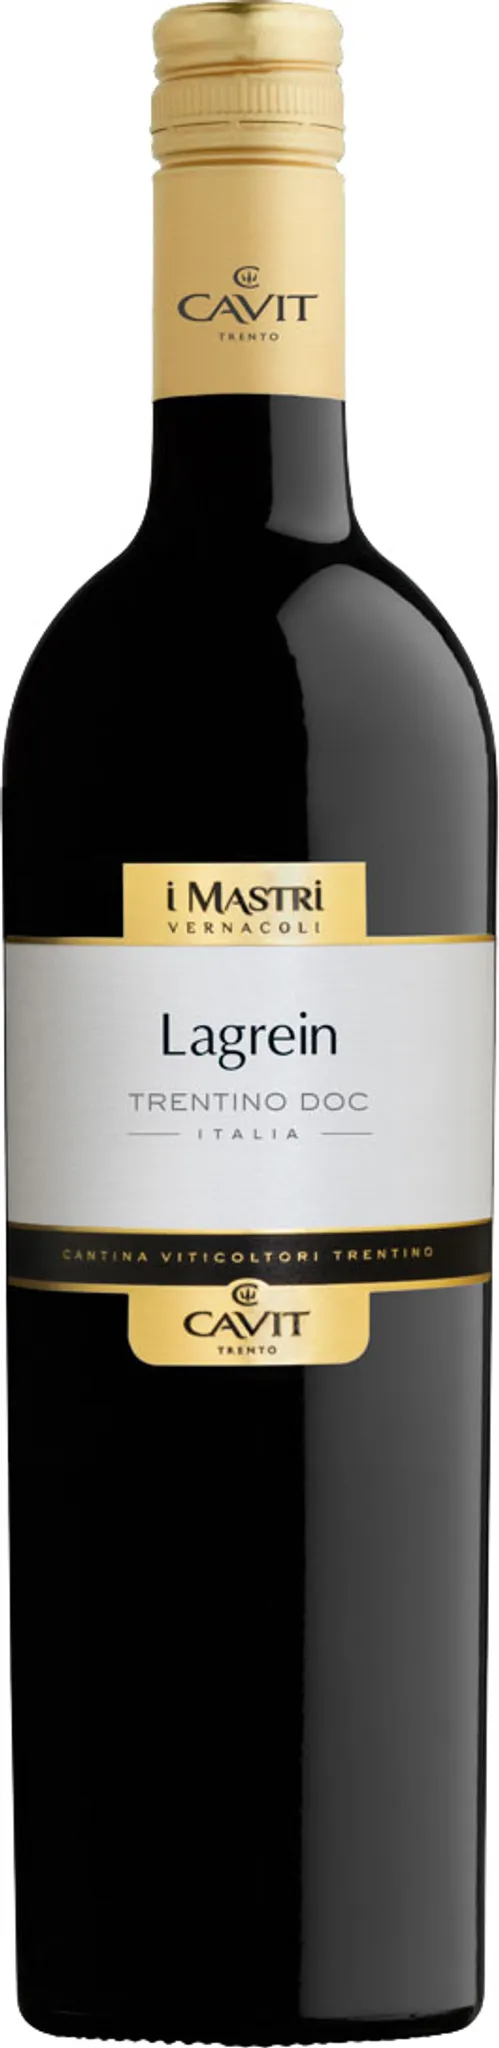 Trentino Rotwein Mastri Lagrein Cavit trocken Vernacoli DOC Trentin